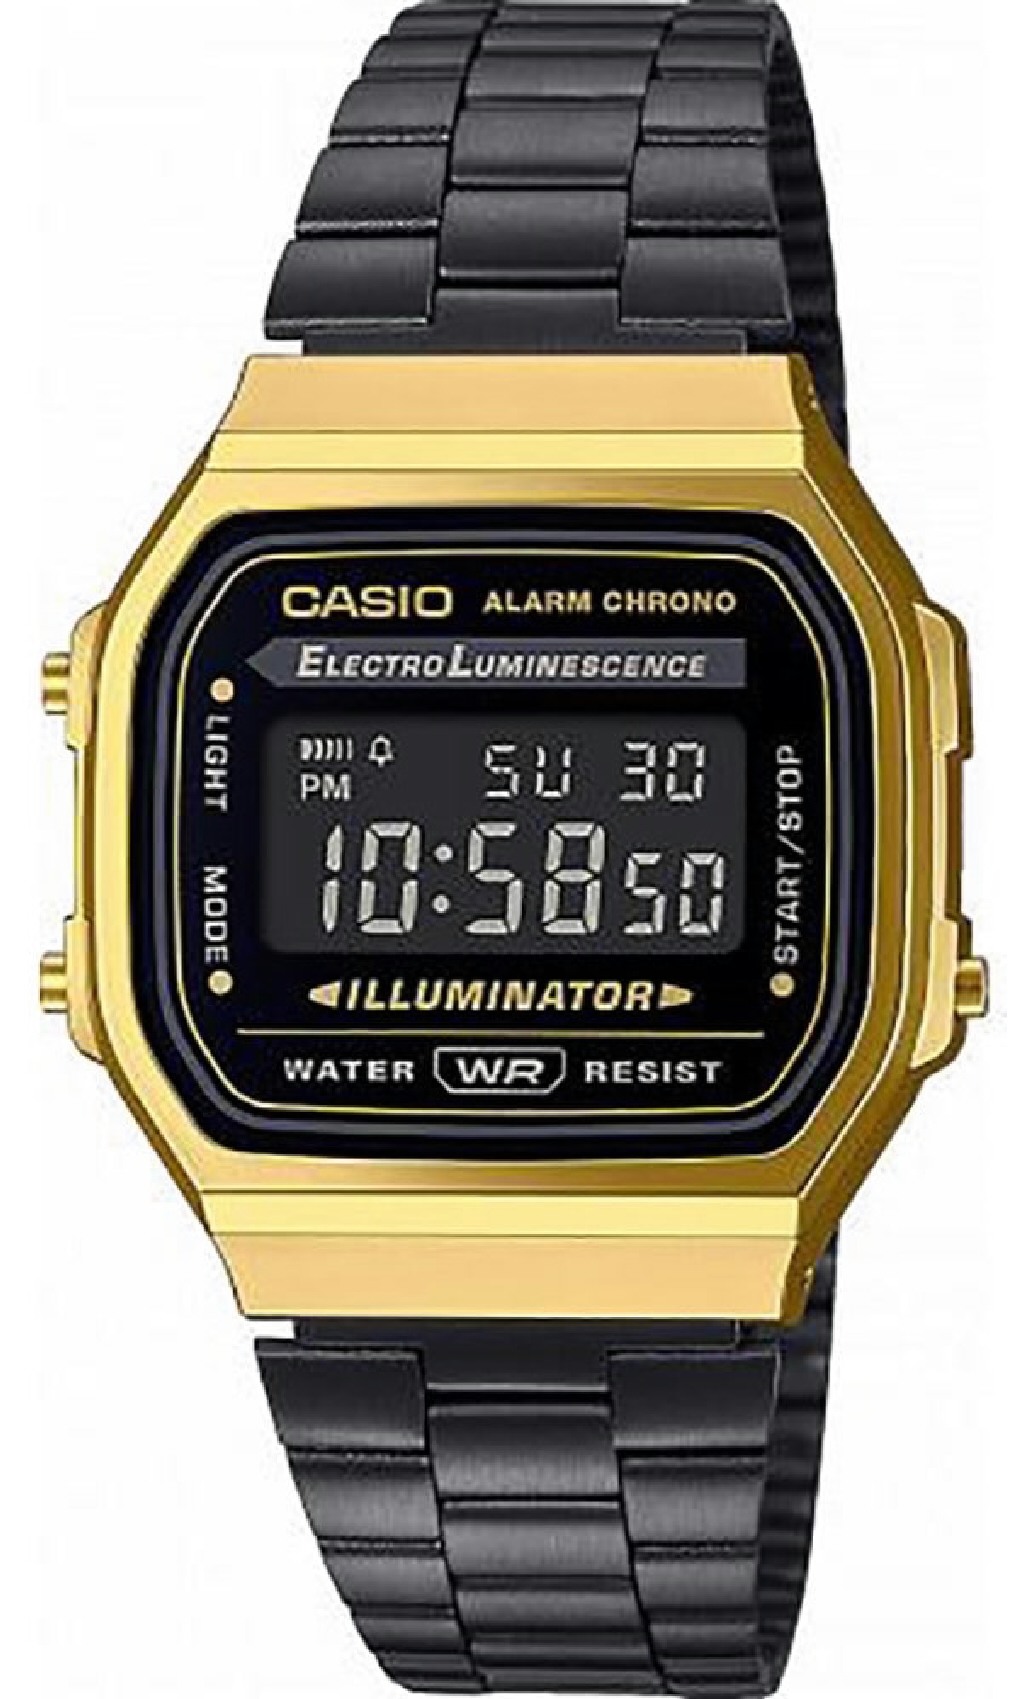 Reloj Casio vintage redondo dorado malla